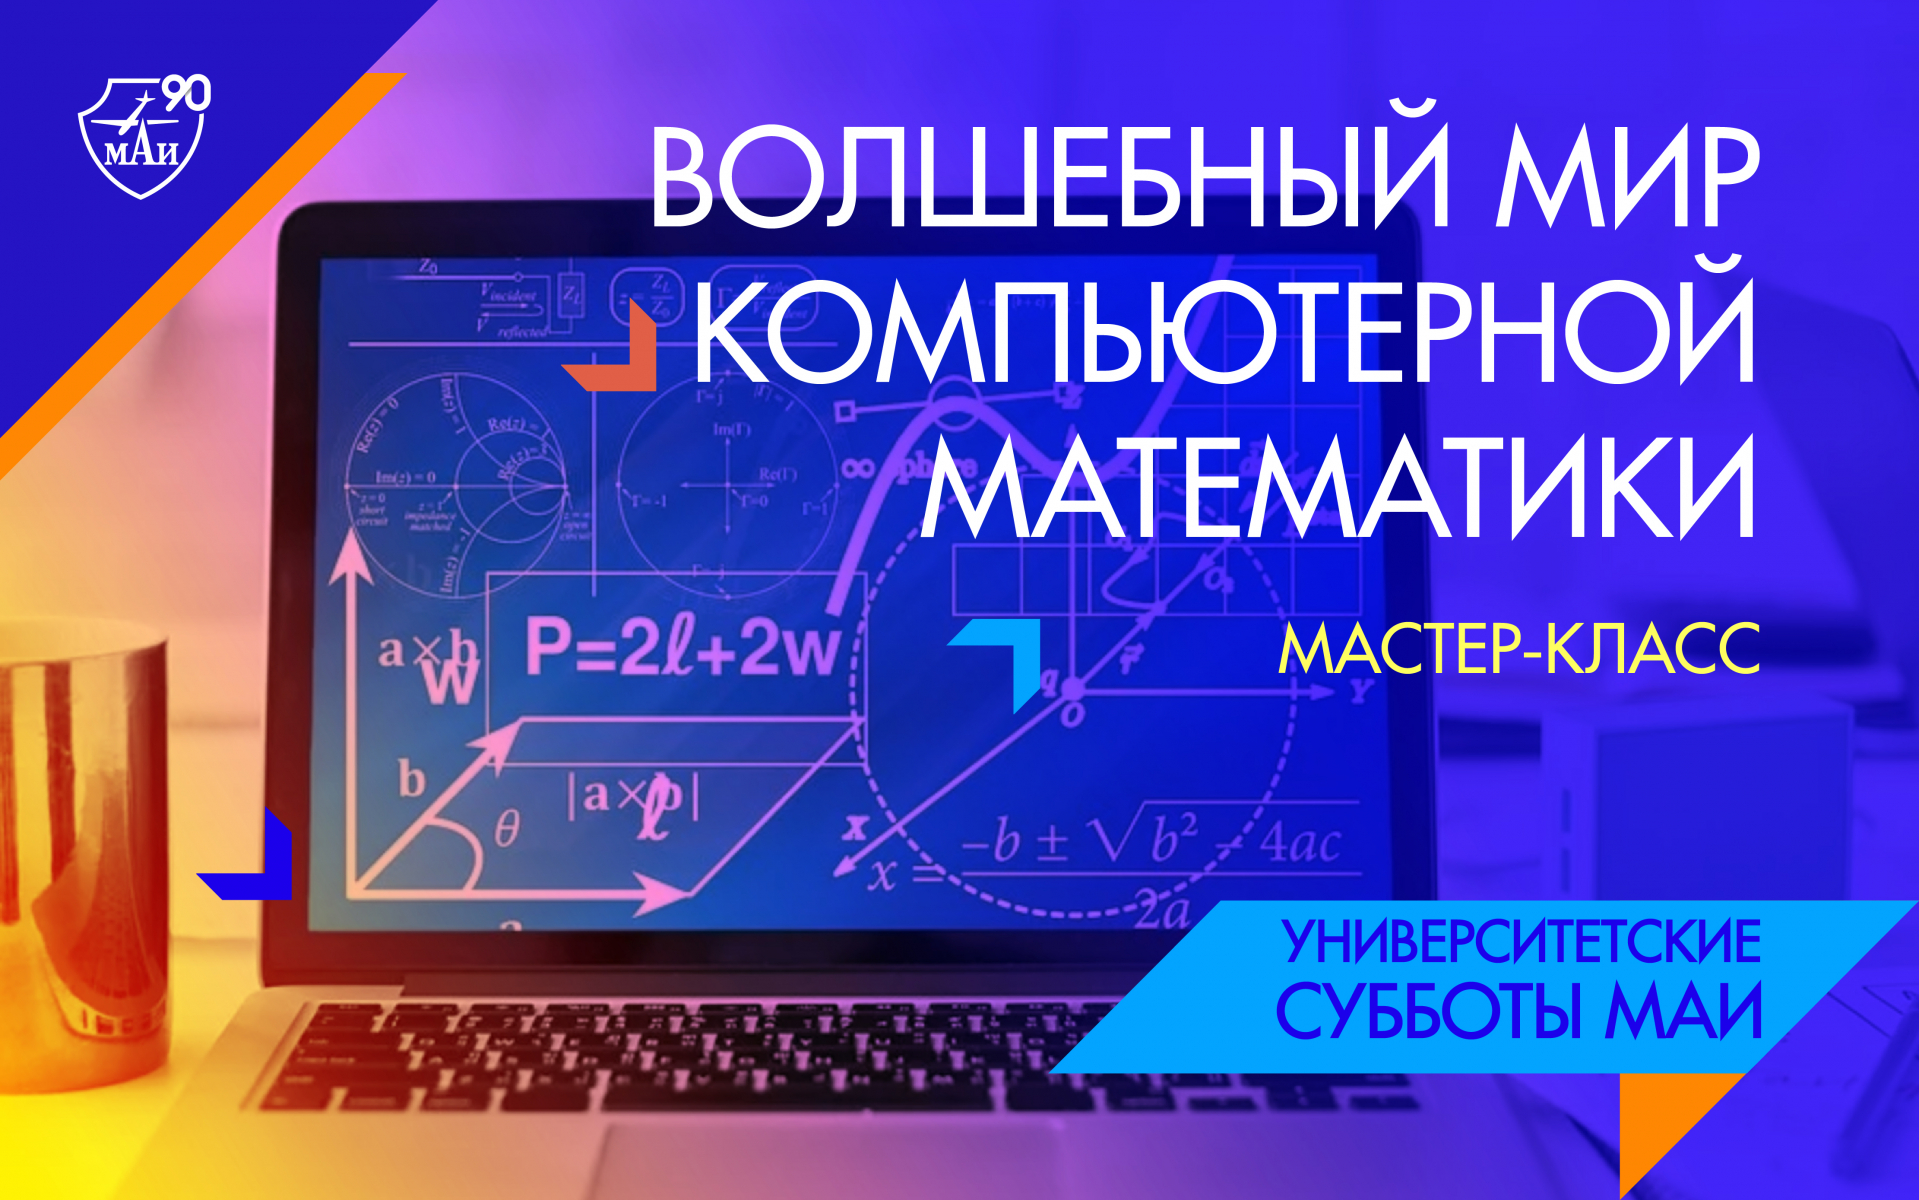 «Волшебный мир компьютерной математики»